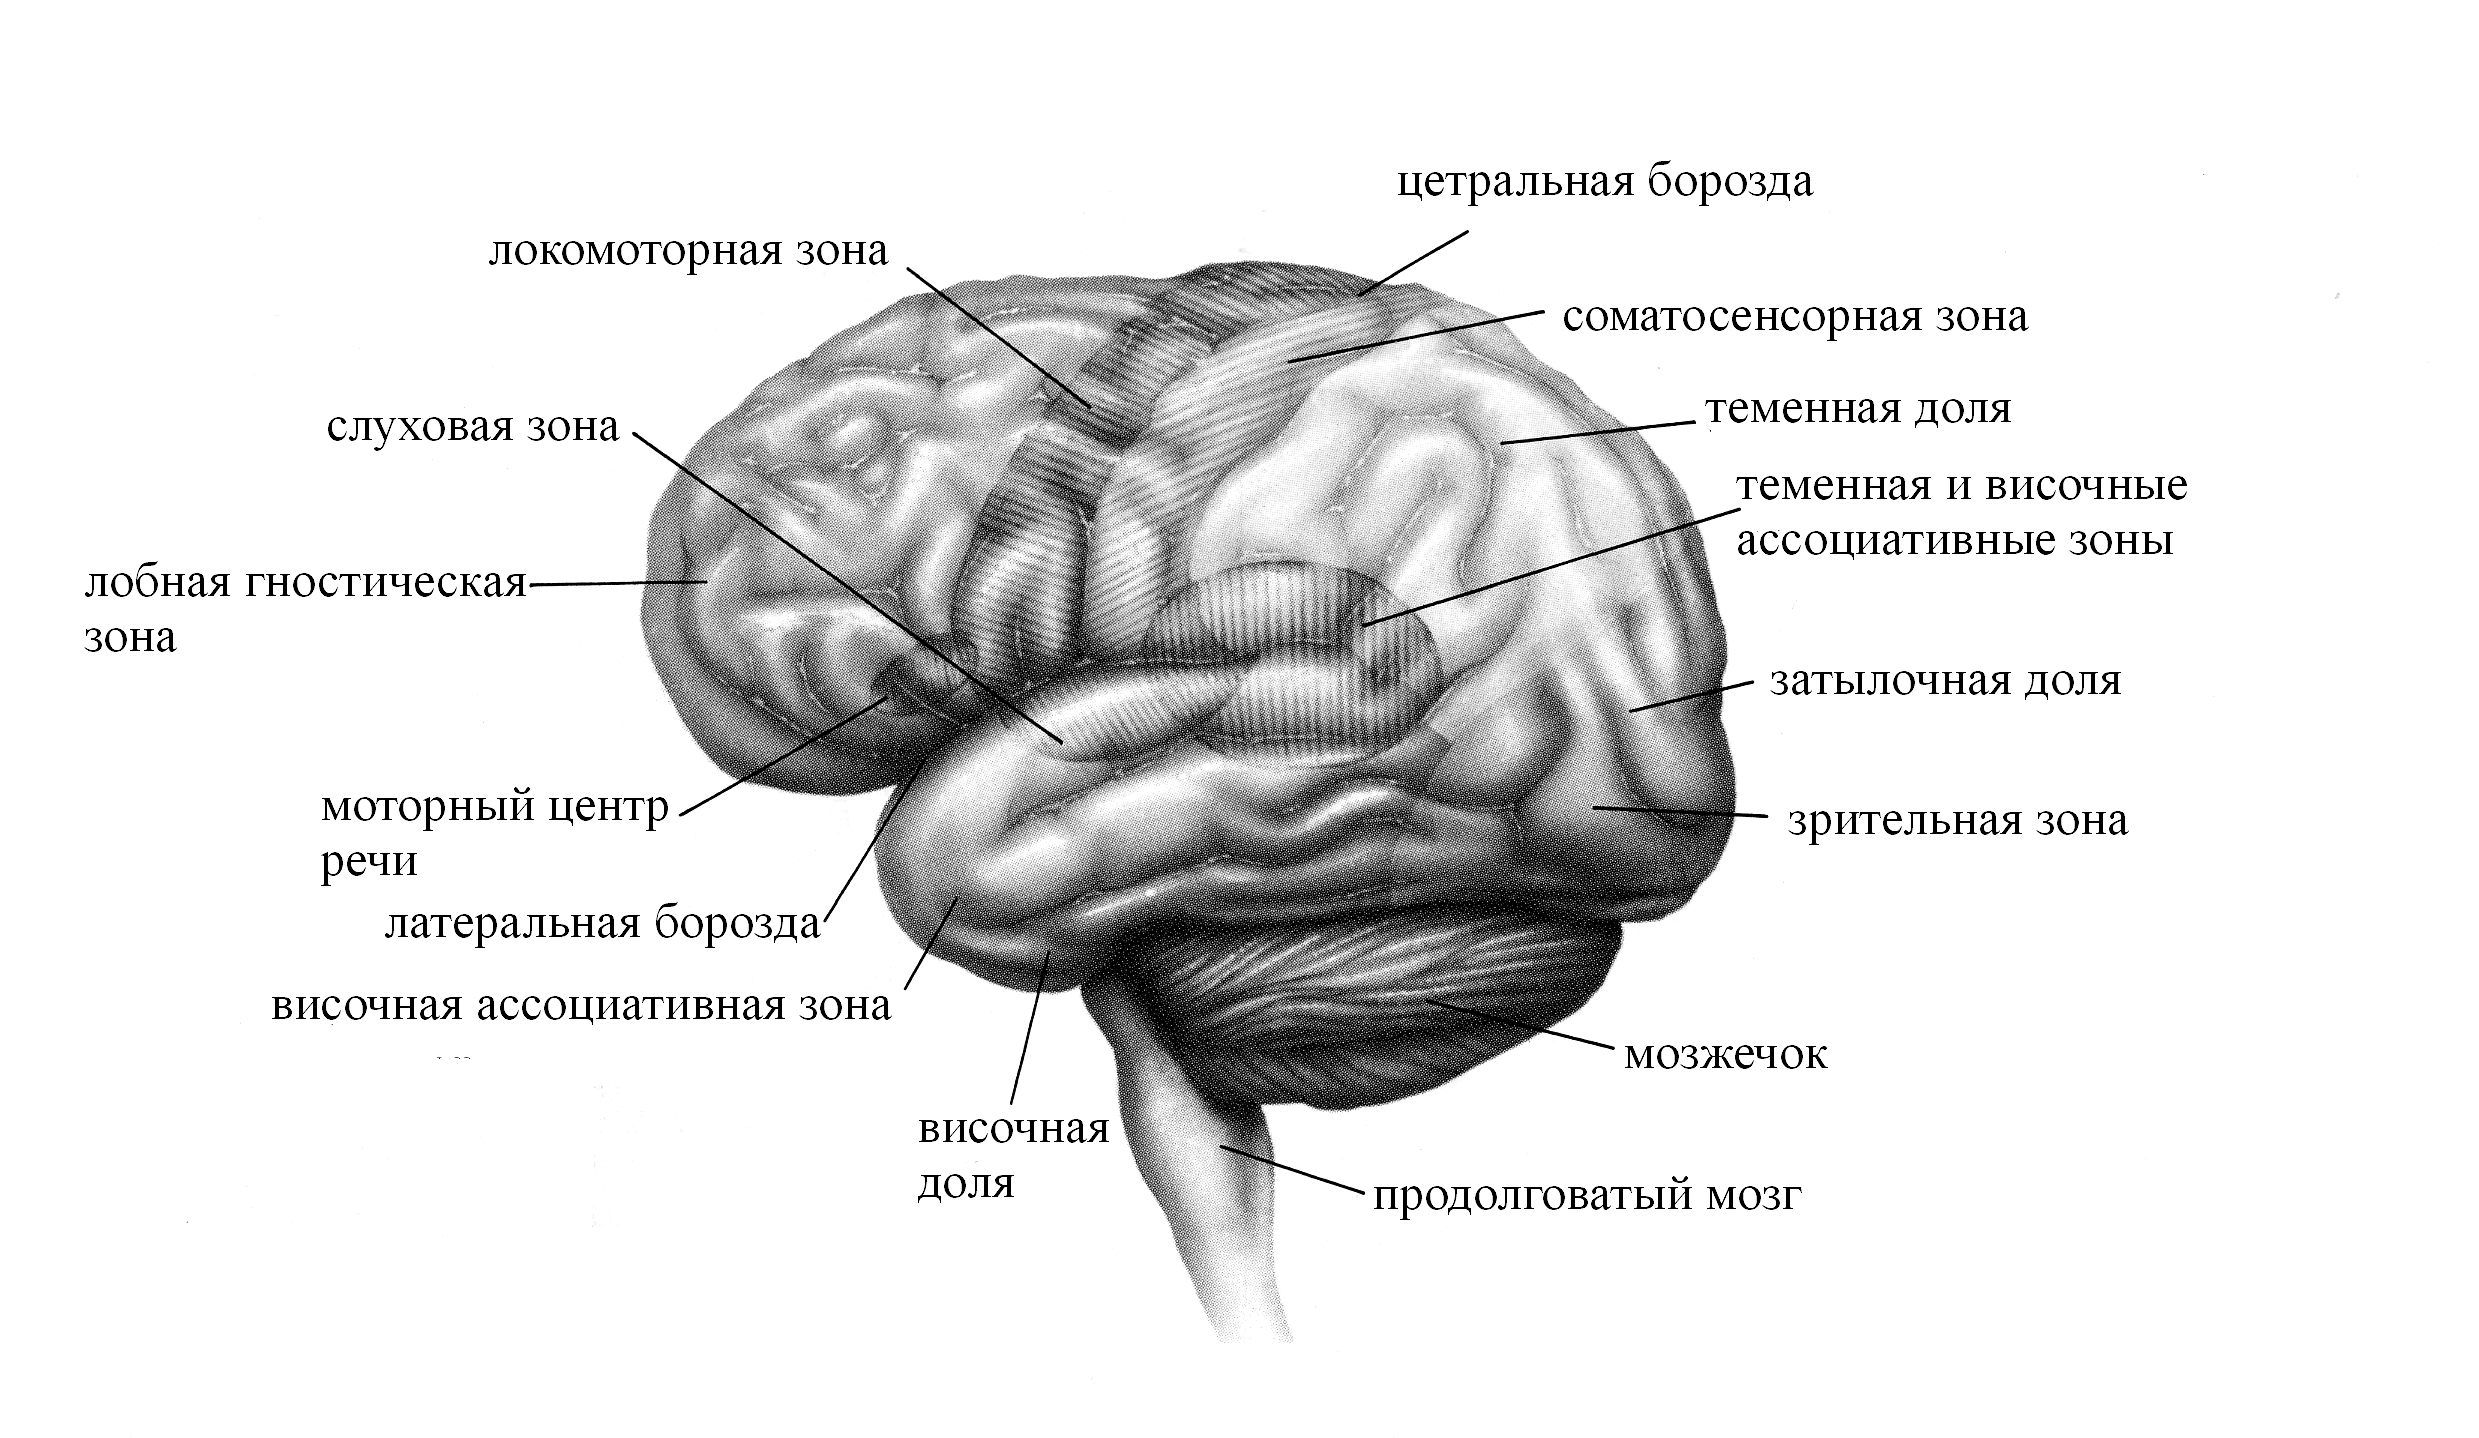 Основные зоны коры мозга. Борозды головной мозга теменной доле. Функциональные центры теменной доли. Функциональные зоны коры головного мозга Центральная борозда.